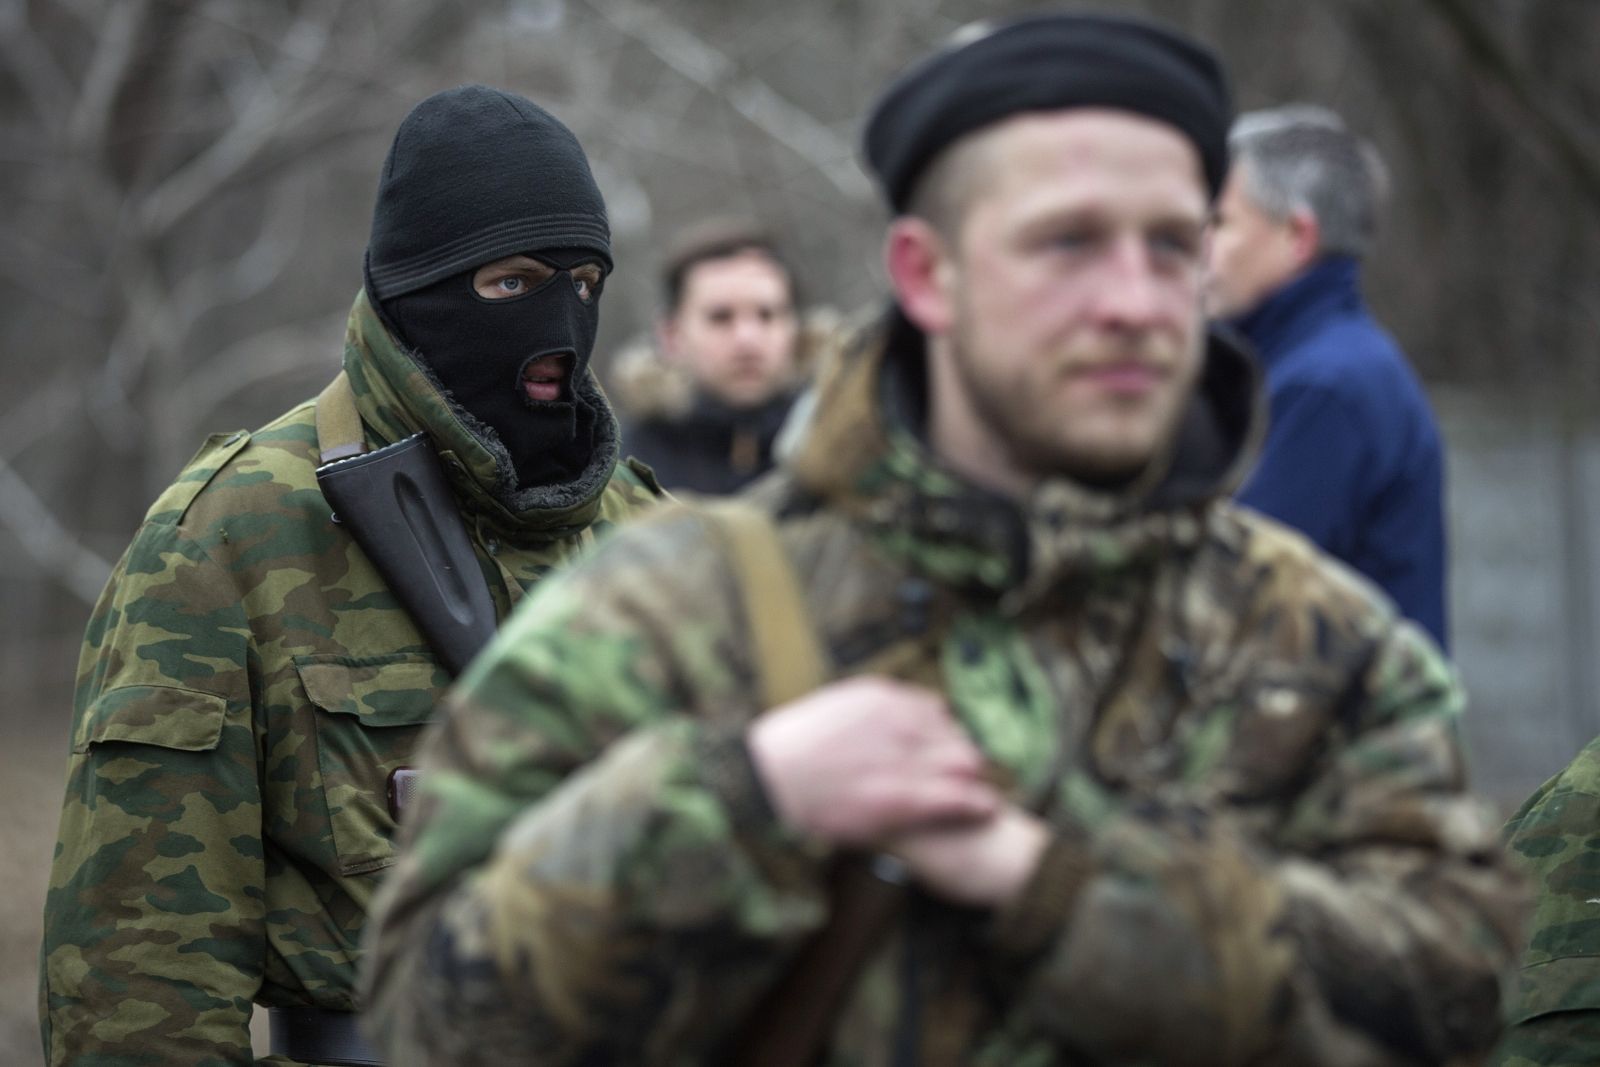 Donetsk separatist